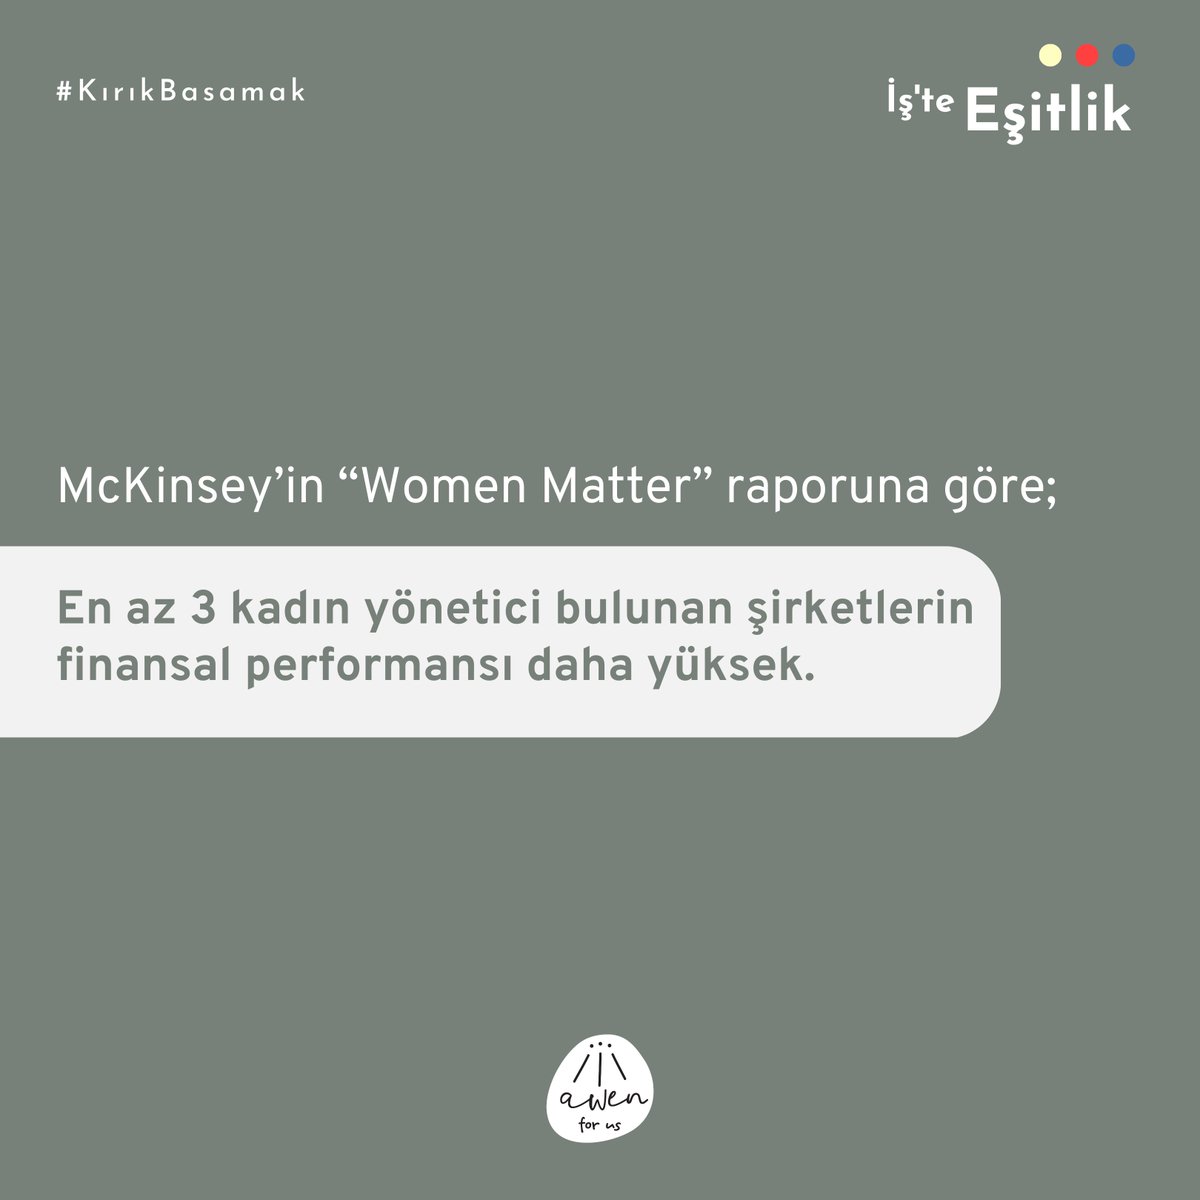 McKinsey raporu, en az 3 kadın yönetici bulunan şirketlerin finansal performansı daha yüksek olduğunu söylüyor. 

Faydalanılan Kaynak:WEPs Kadının Güçlenmesi Prensipleri Uygulama Rehberi
#İşteEşitlik #kadınyöneticiler #womenmatter #yönetimkurulundakadın